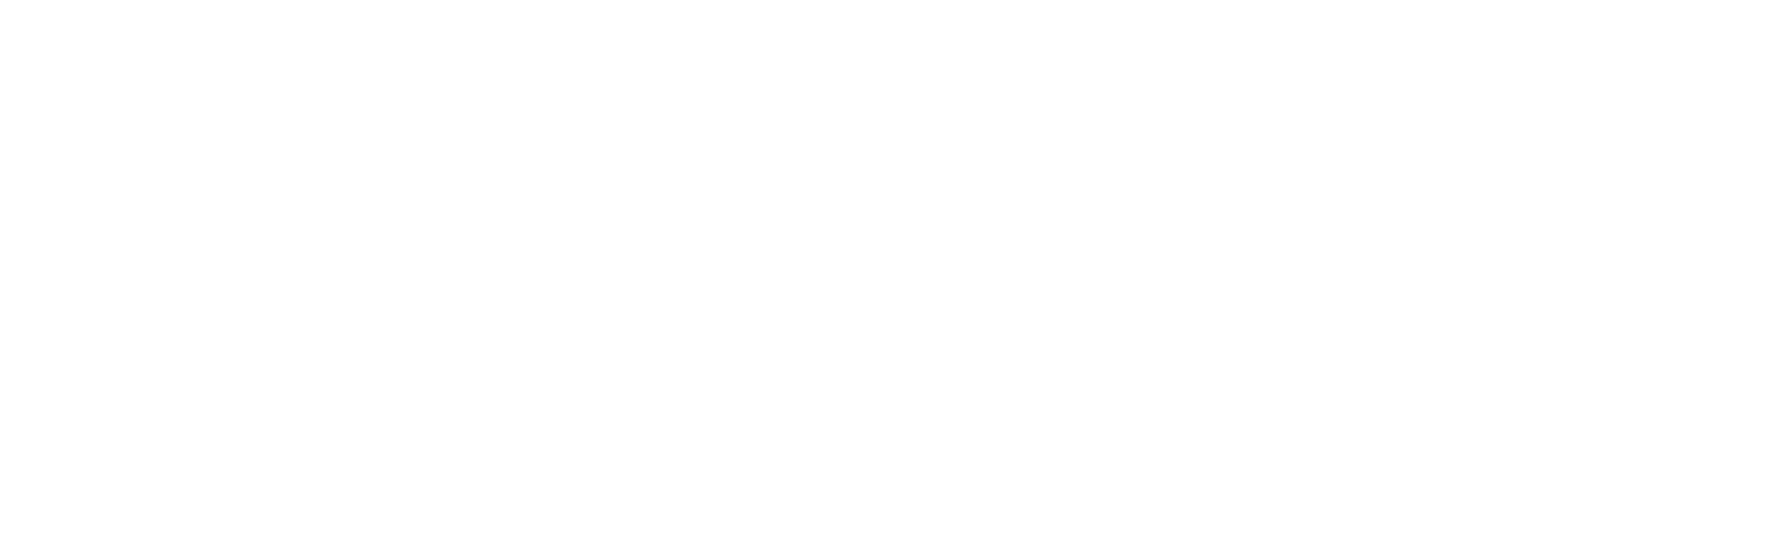 Kodenext-logo